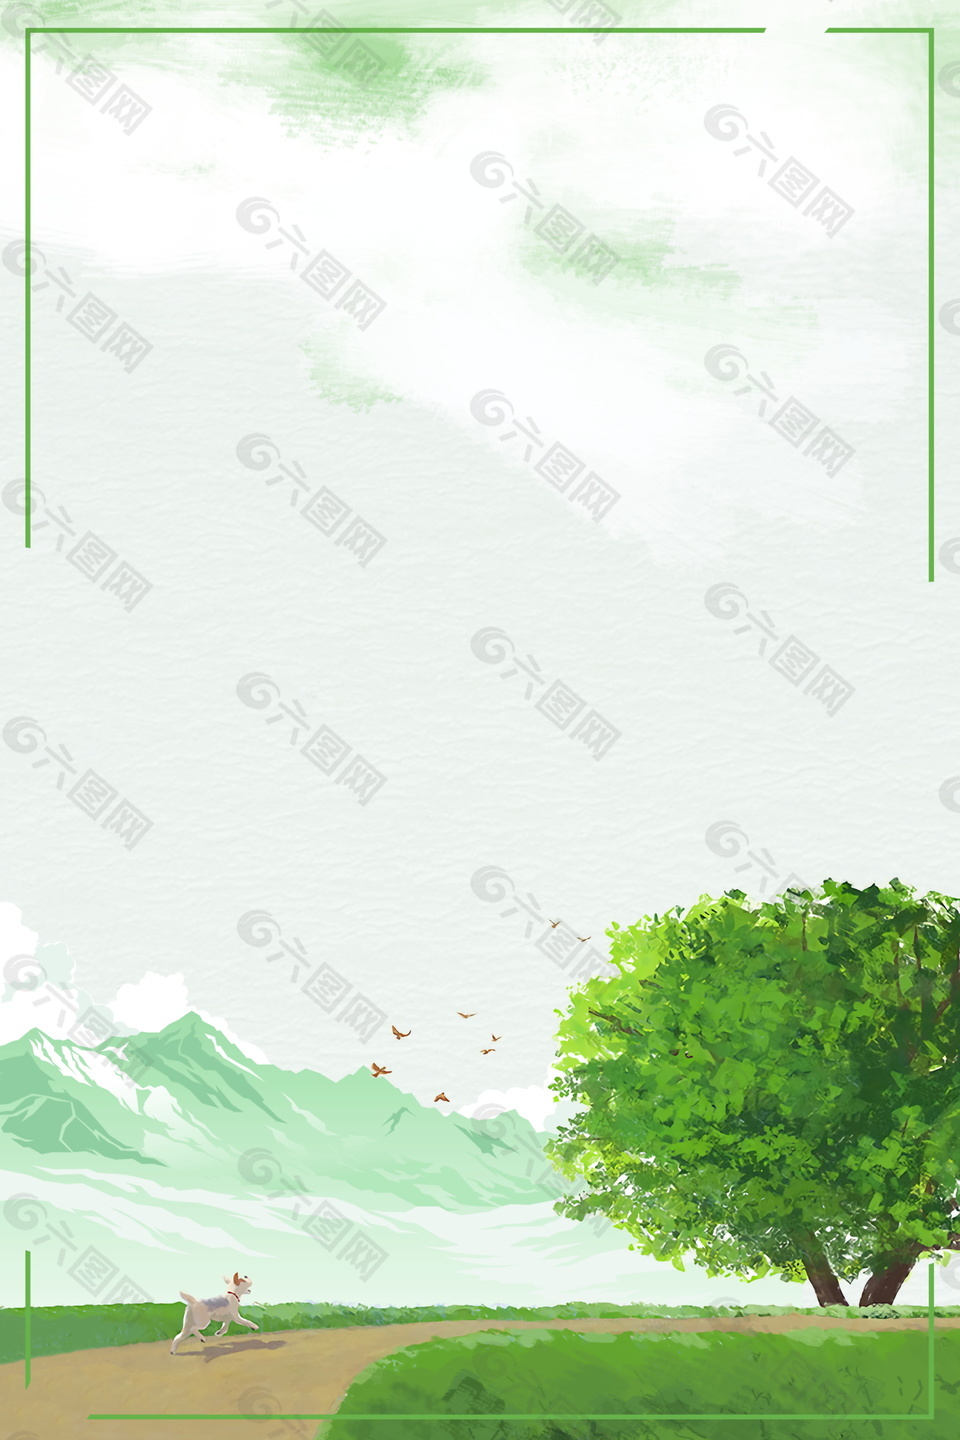 作品主题是简约大树远山边框绿色背景素材,编号是9296453,格式是pd